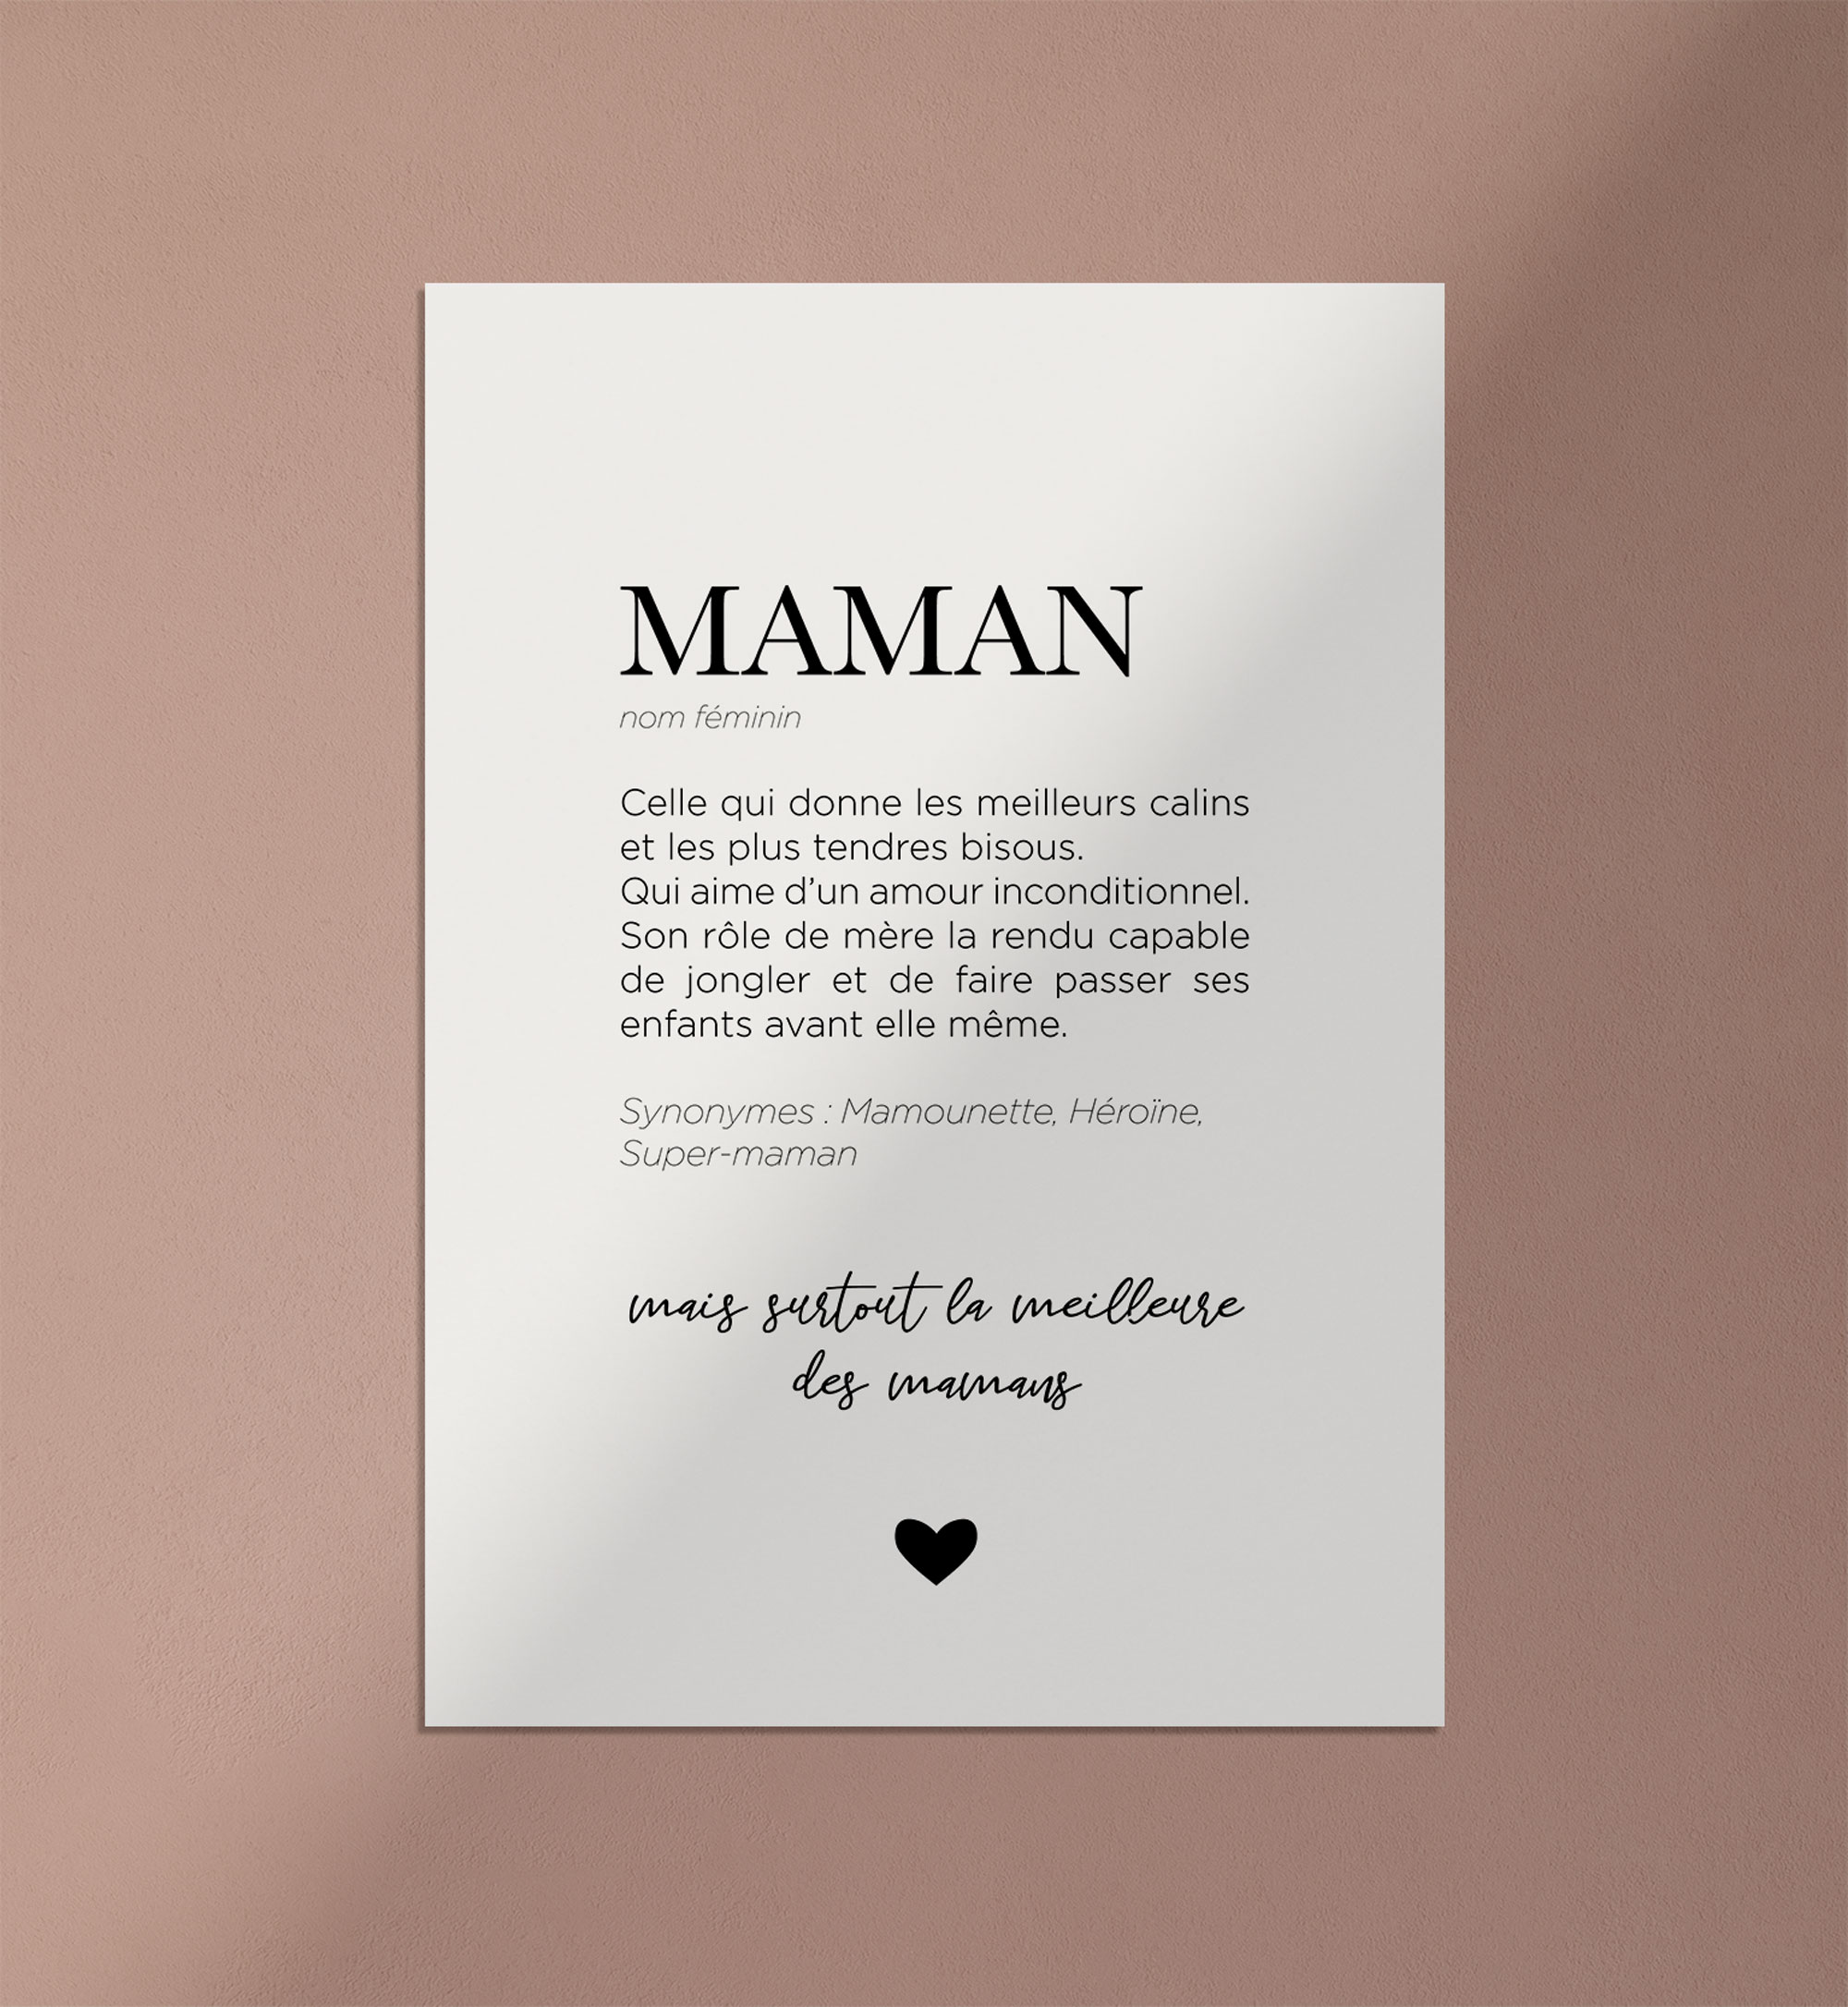 Maman définition • Affiche Maman